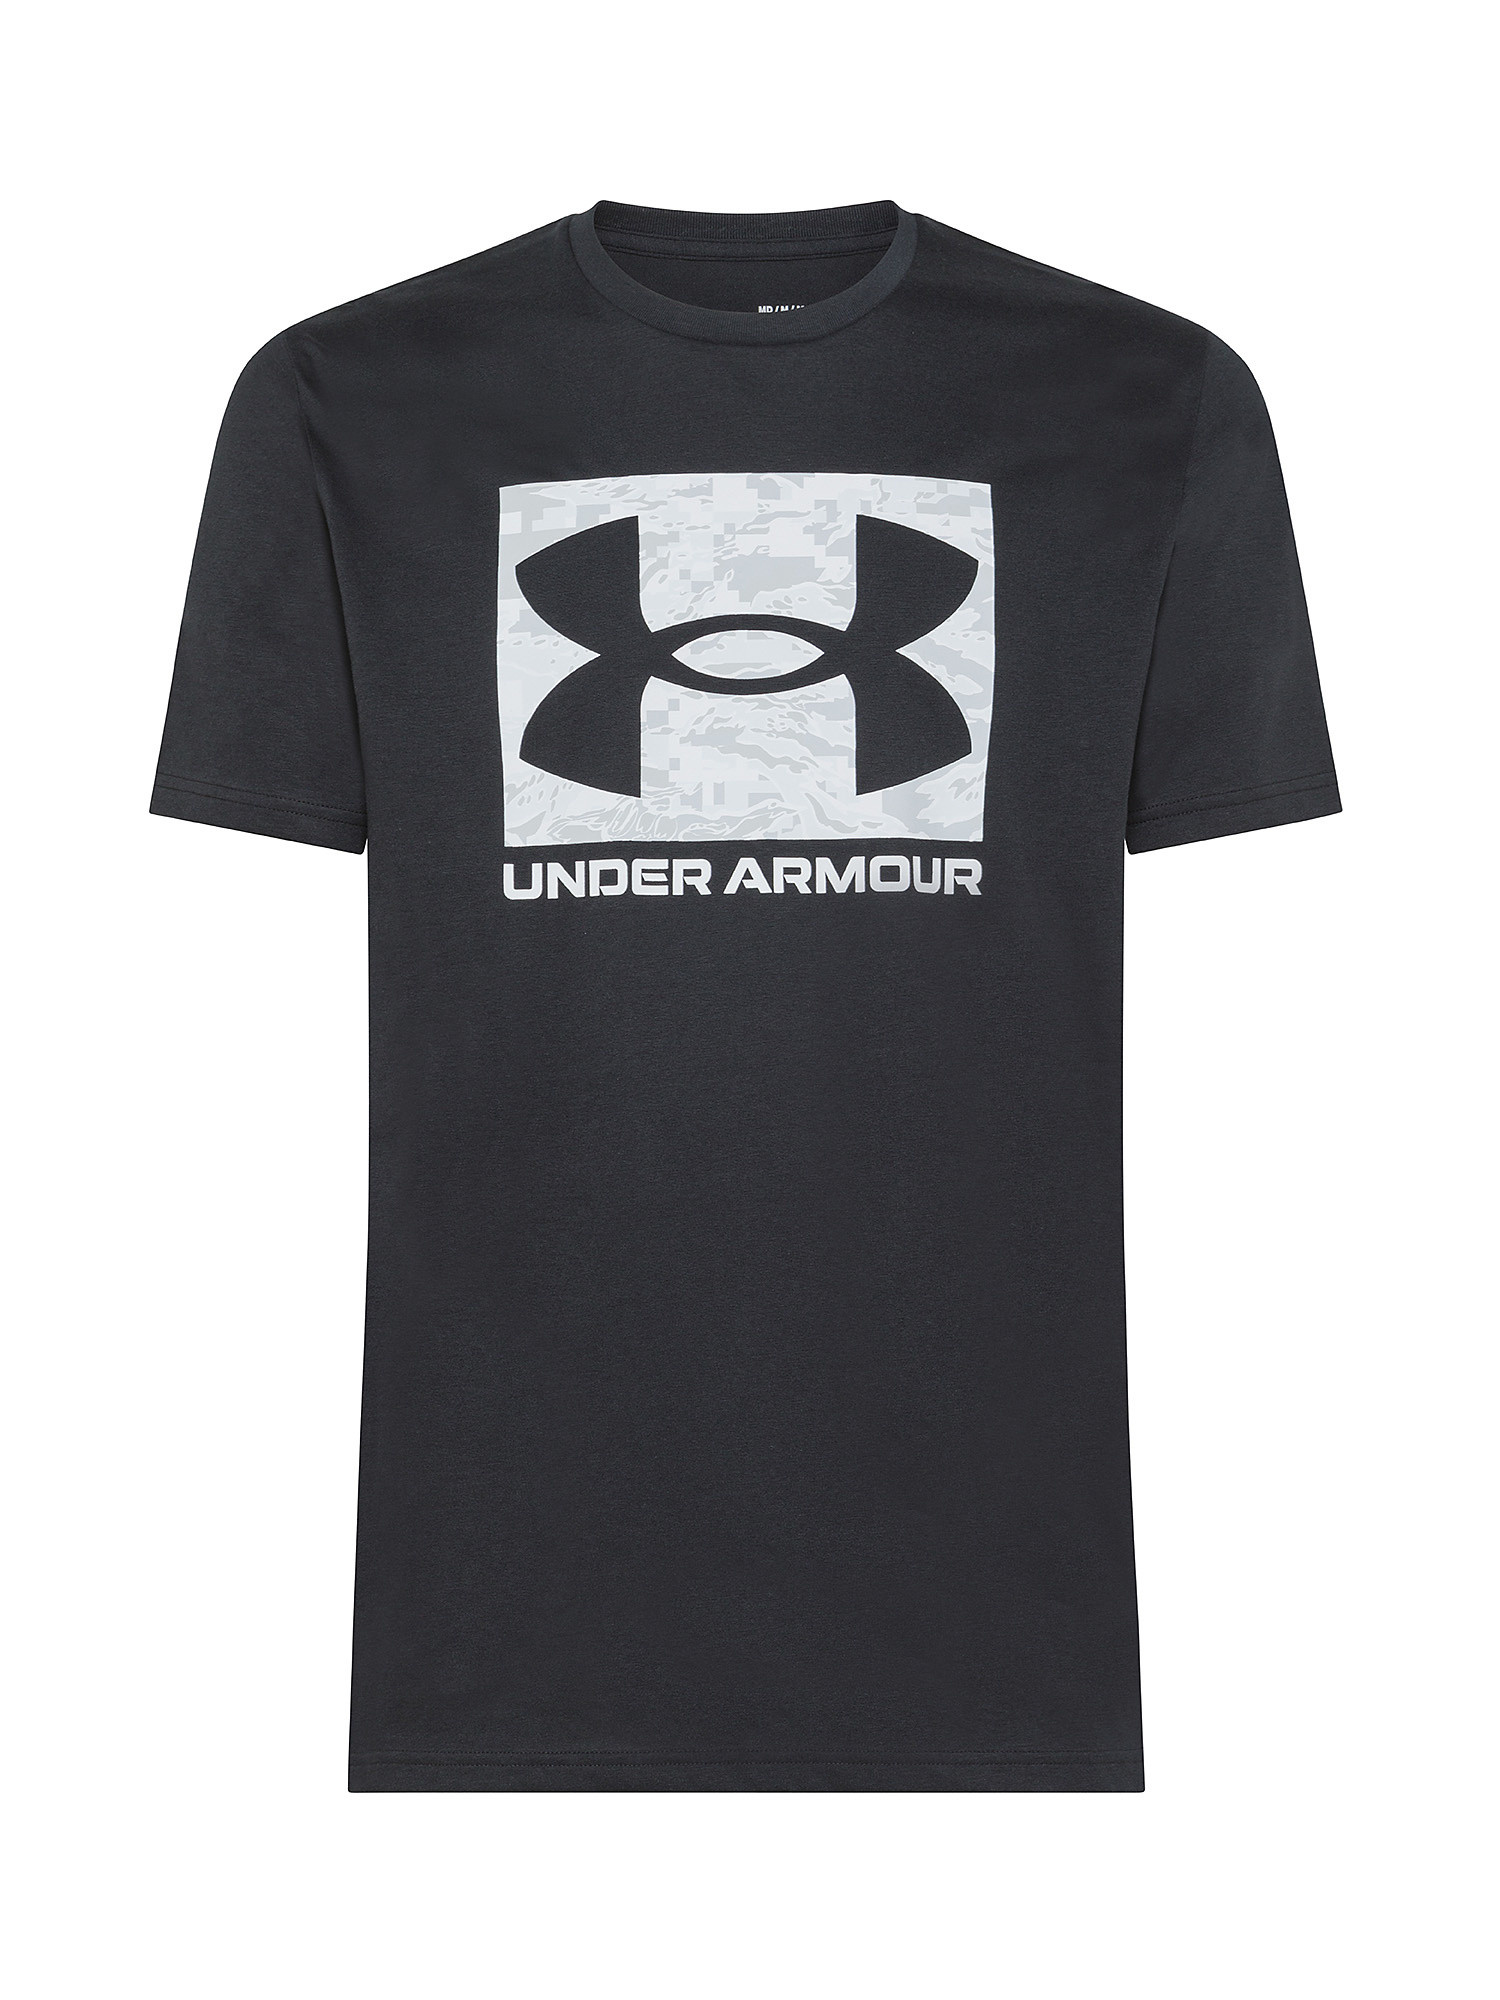 Under Armour - UA ABC Camo Boxed Logo Short Sleeve Jersey, Black, large image number 0